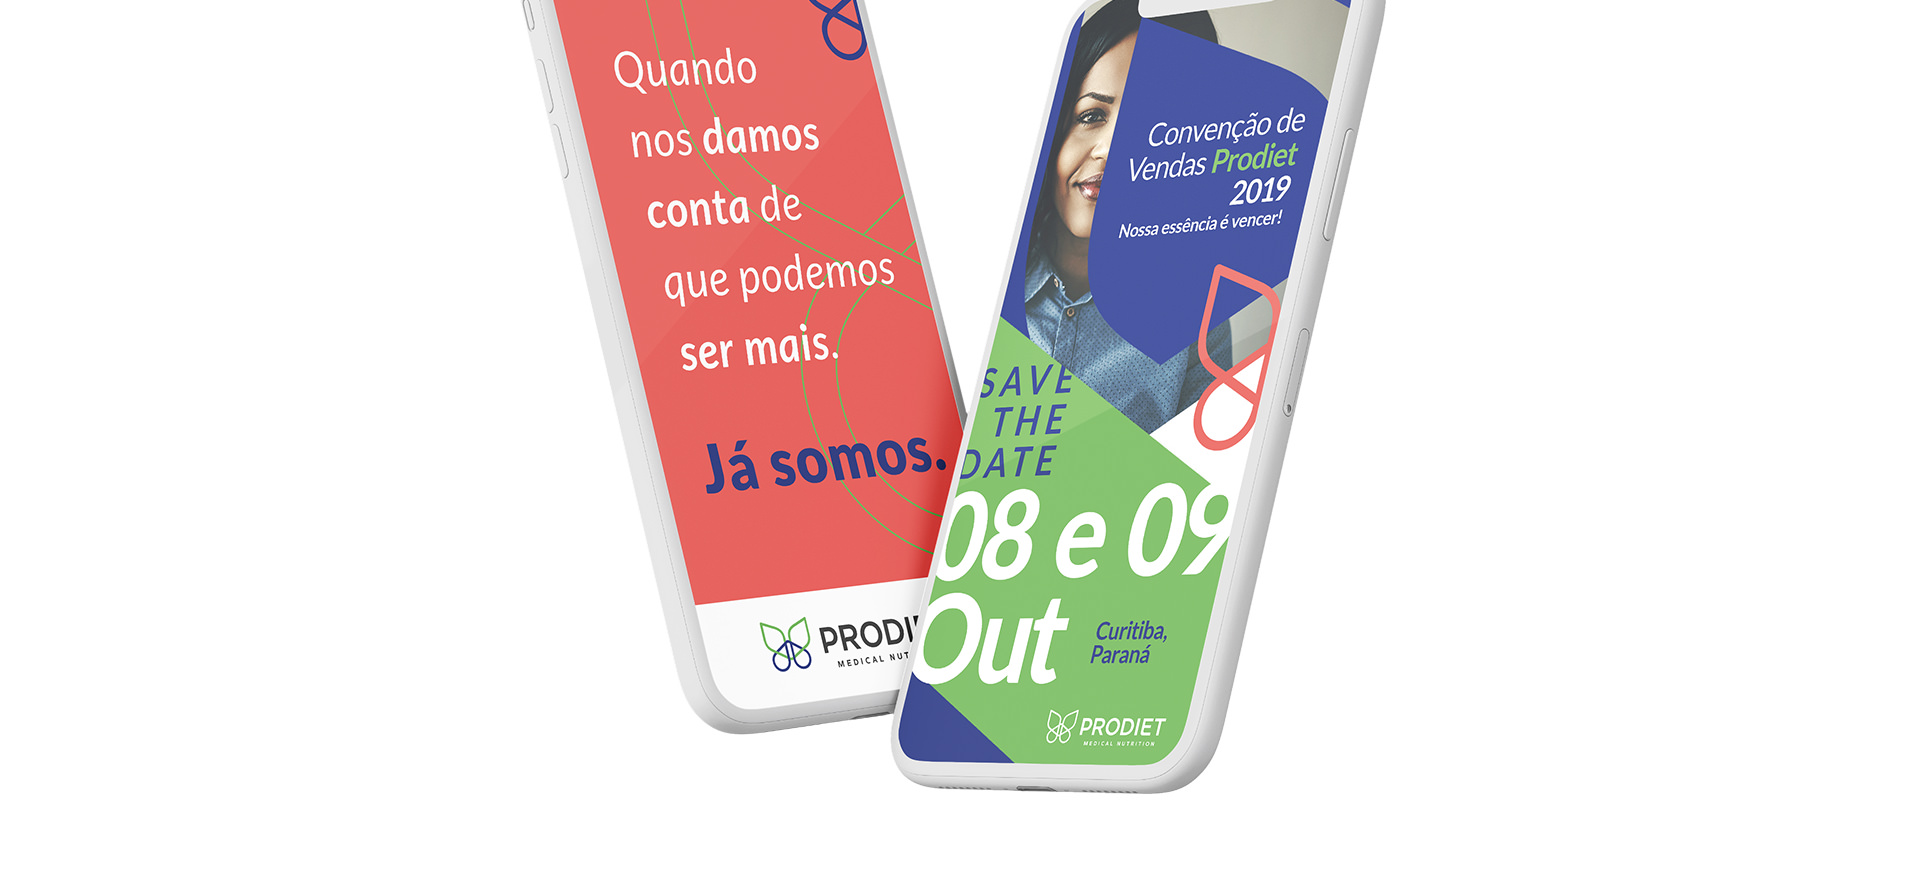 Imagens das embalagens feitas para a campanha